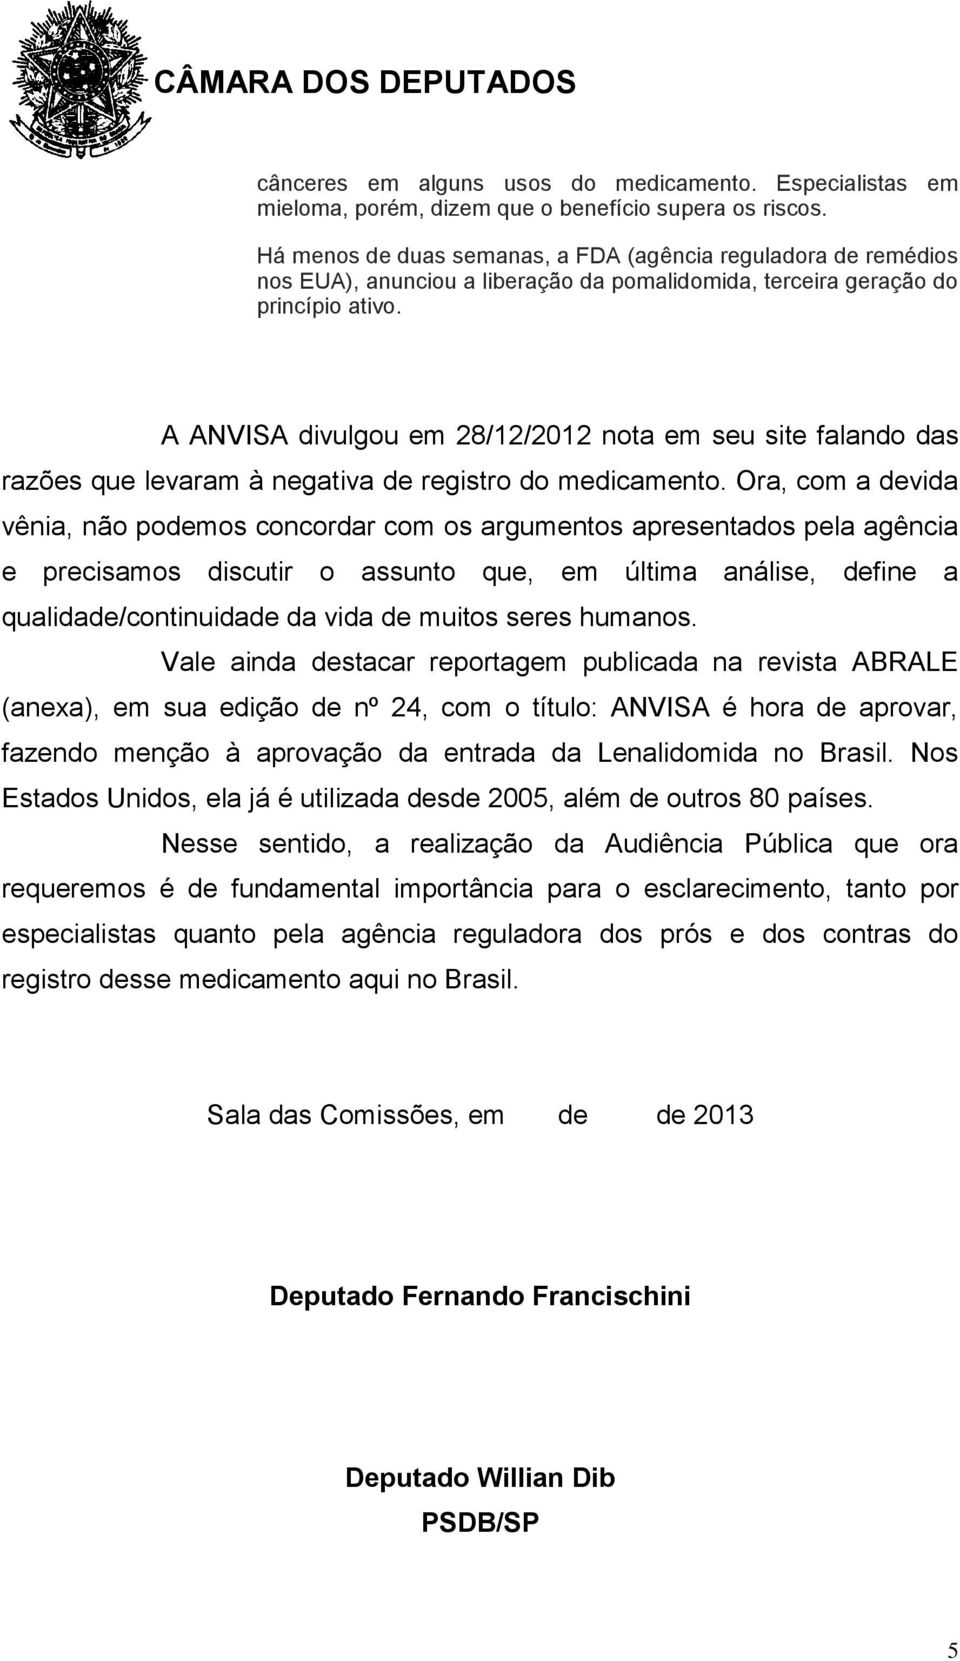 A ANVISA divulgou em 28/12/2012 nota em seu site falando das razões que levaram à negativa de registro do medicamento.